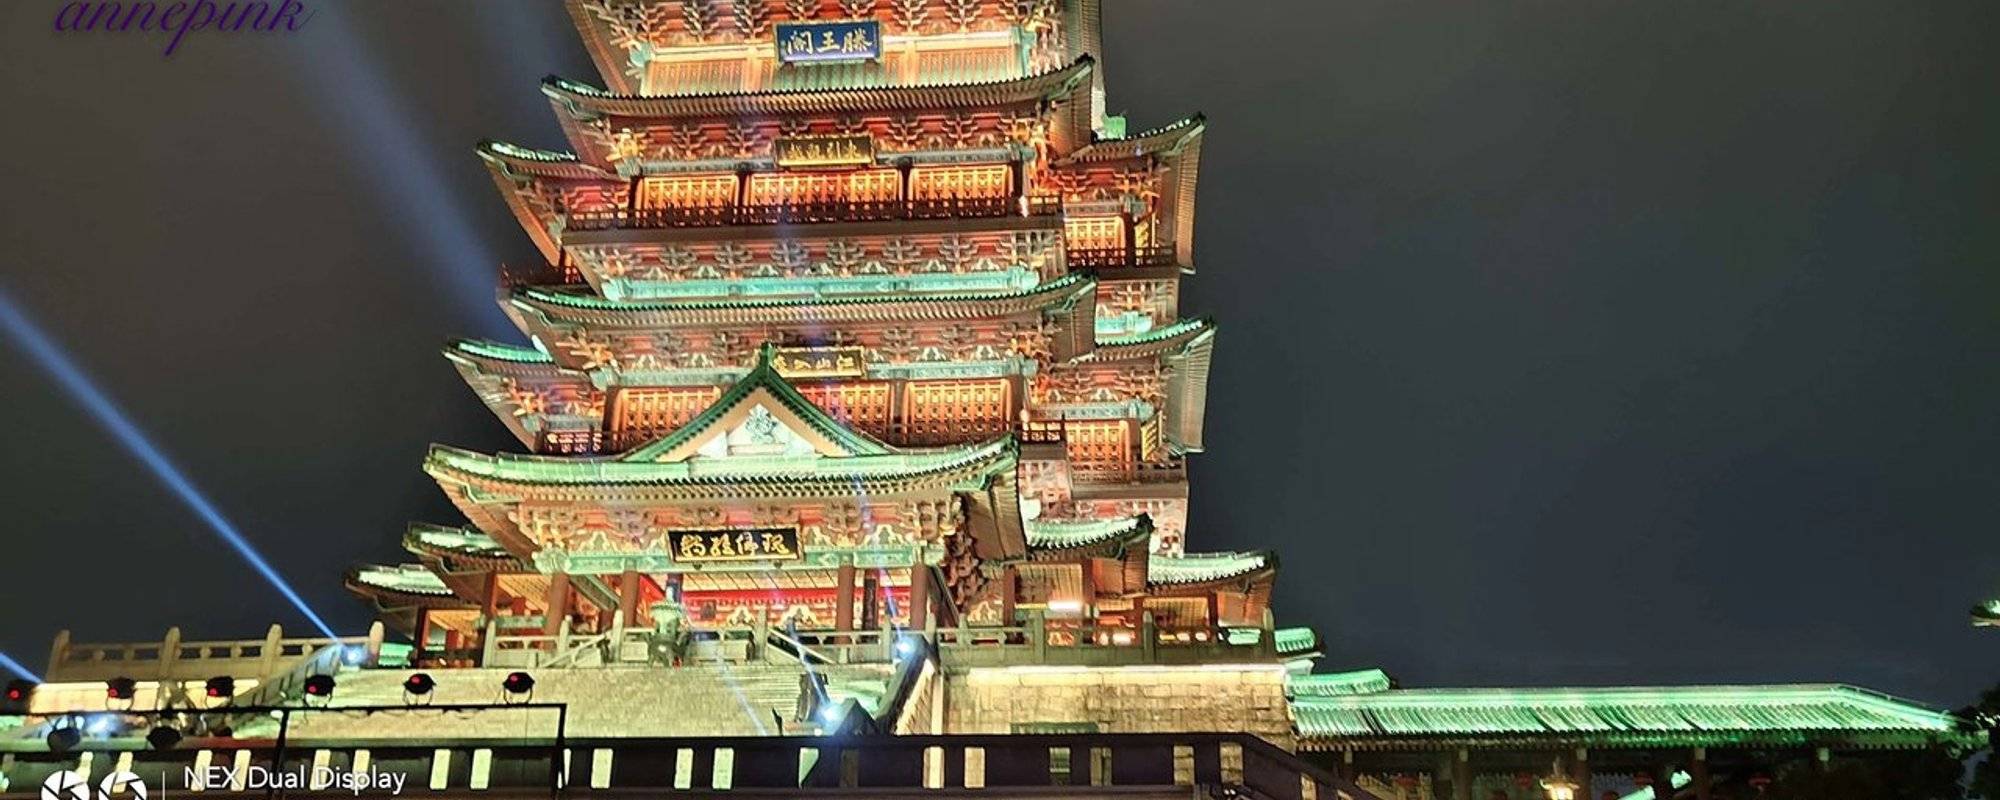 夜游中国江西名楼滕王阁🏯 Night Tour China's Jiangxi Famous Building Tengwang Pavilion